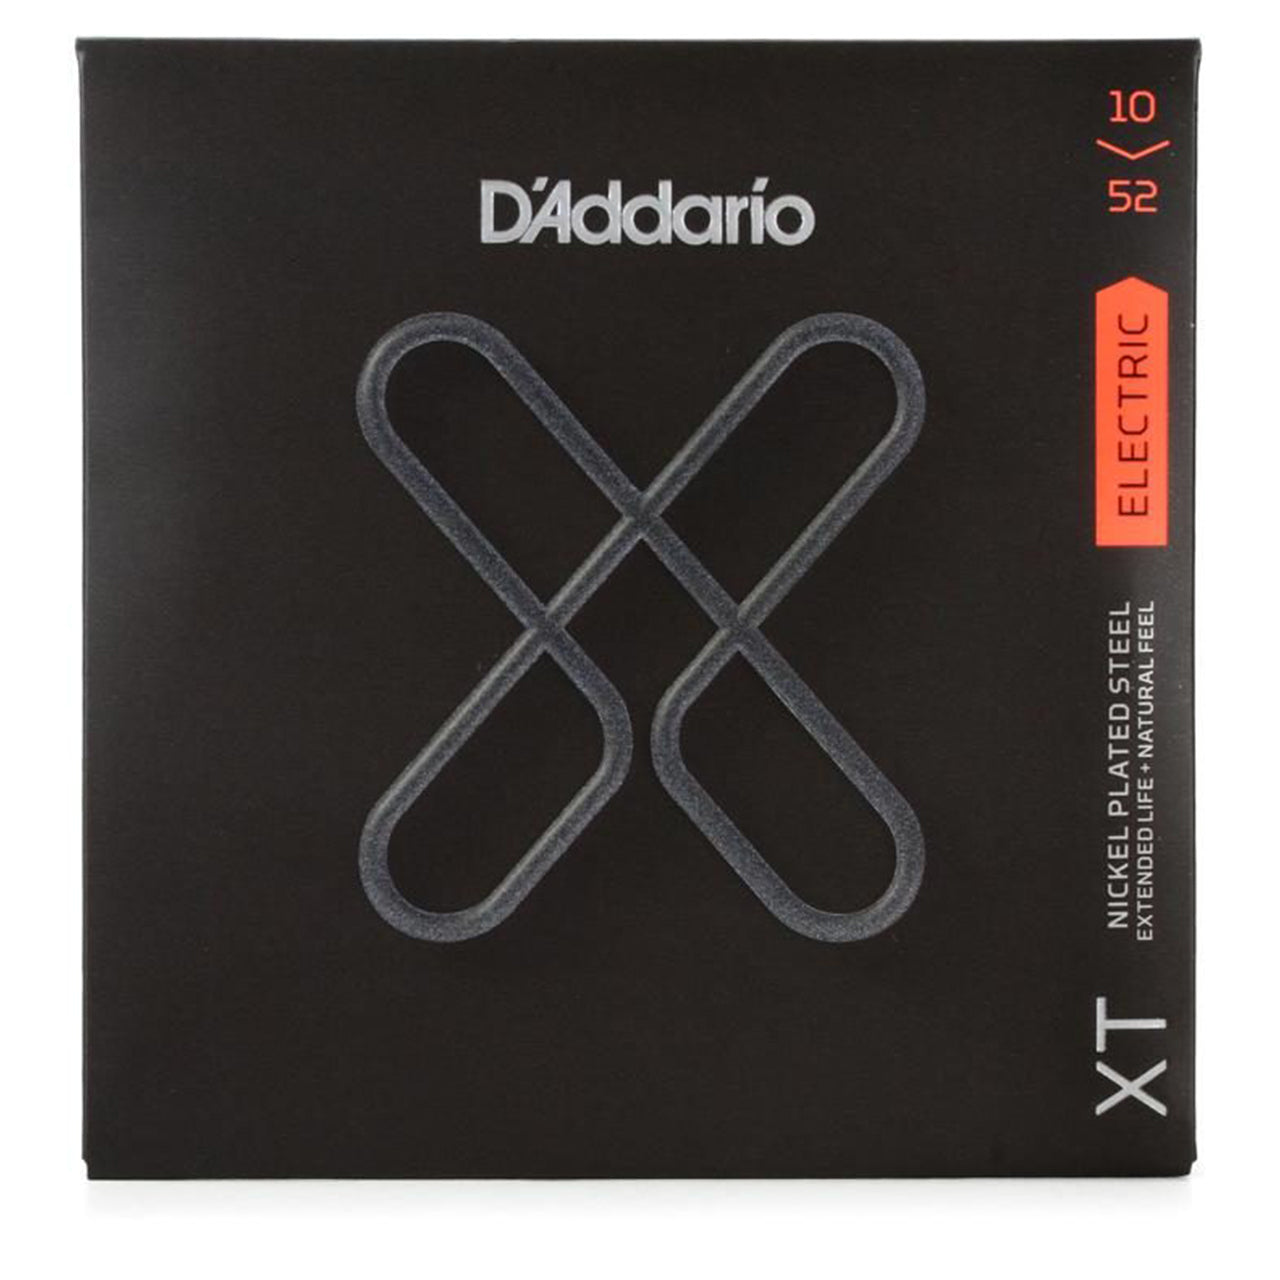 D'Addario XT Electric Nickel Plated Steel Guitar Strings, 10-52